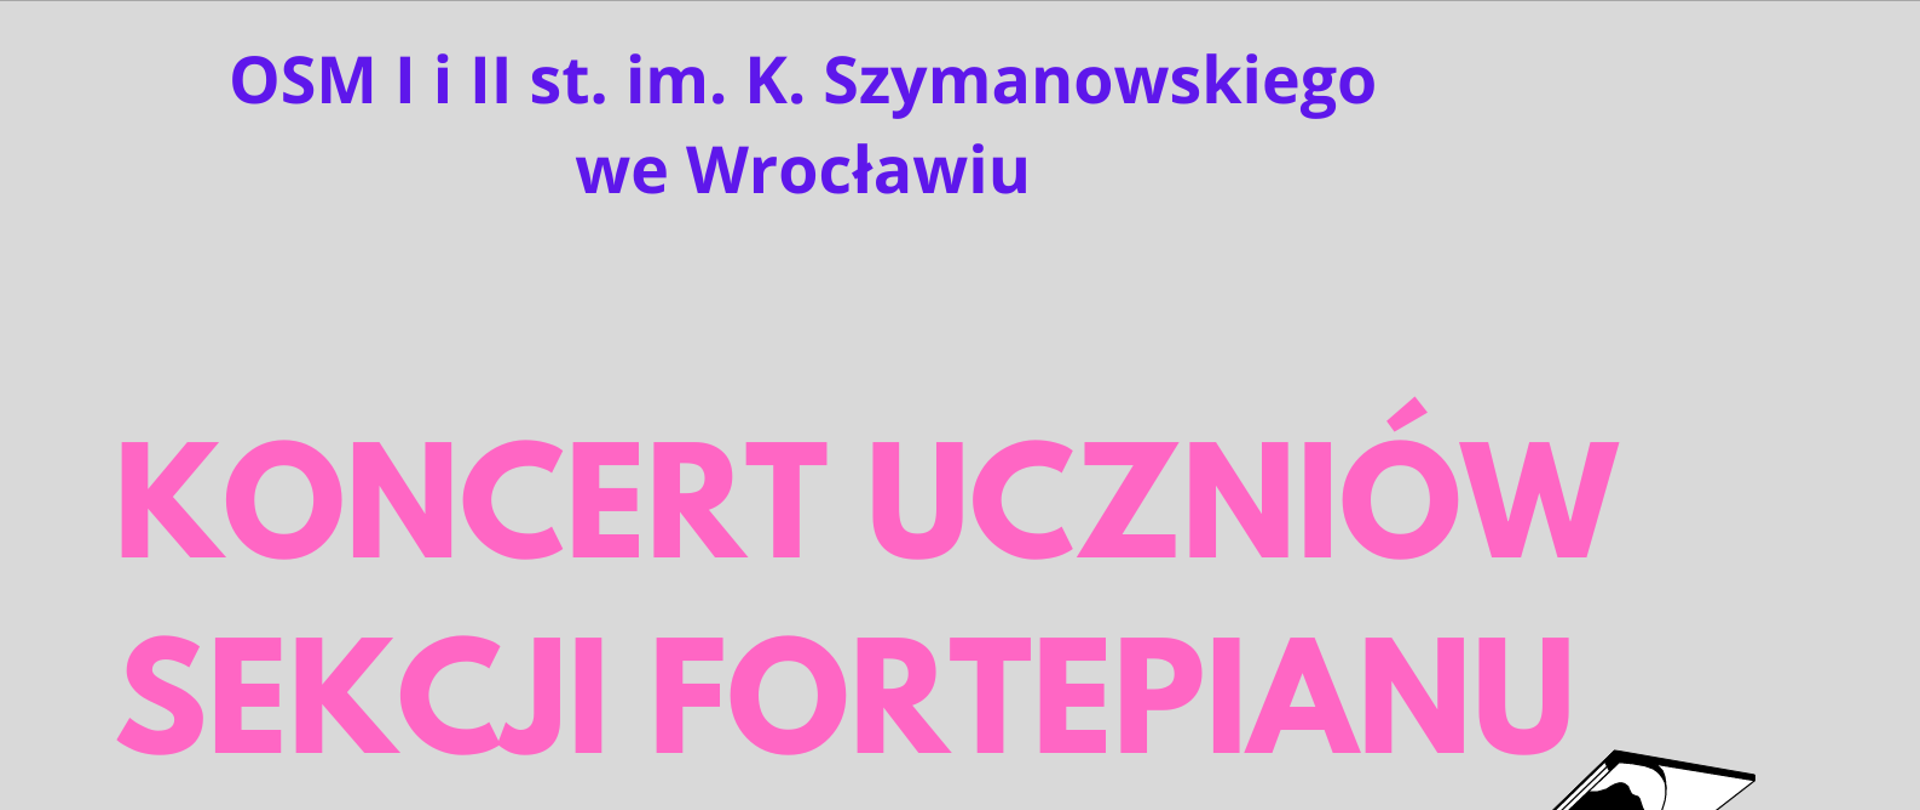 Koncert uczniów sekcji fortepianu 27.04.2023 godz. 18:00 w OSM I i II st. we Wrocławiu